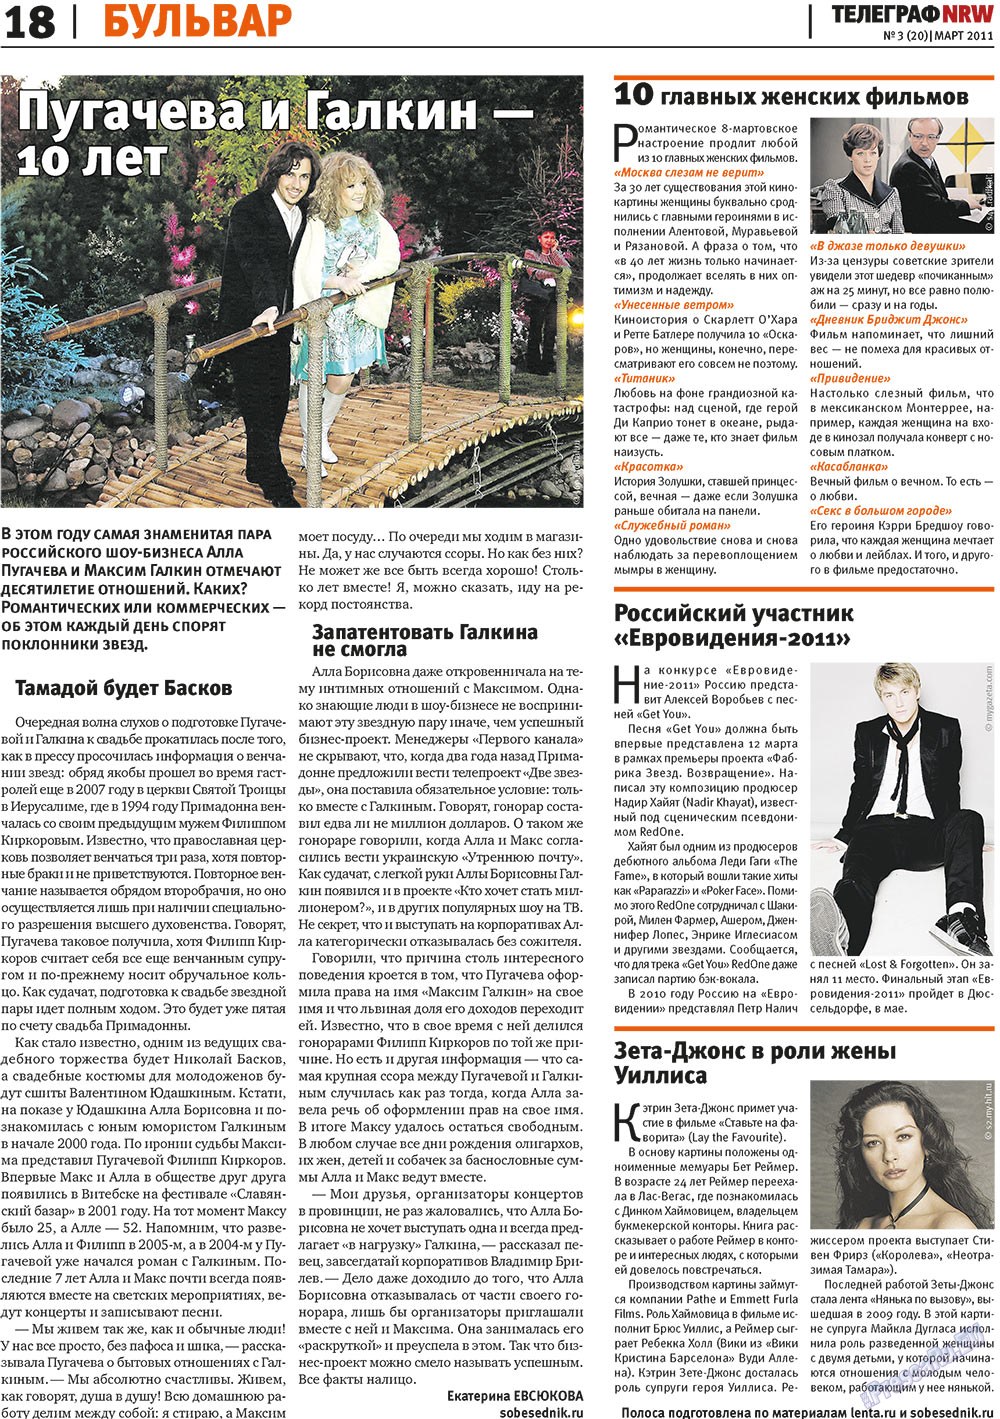 Телеграф NRW (газета). 2011 год, номер 3, стр. 18